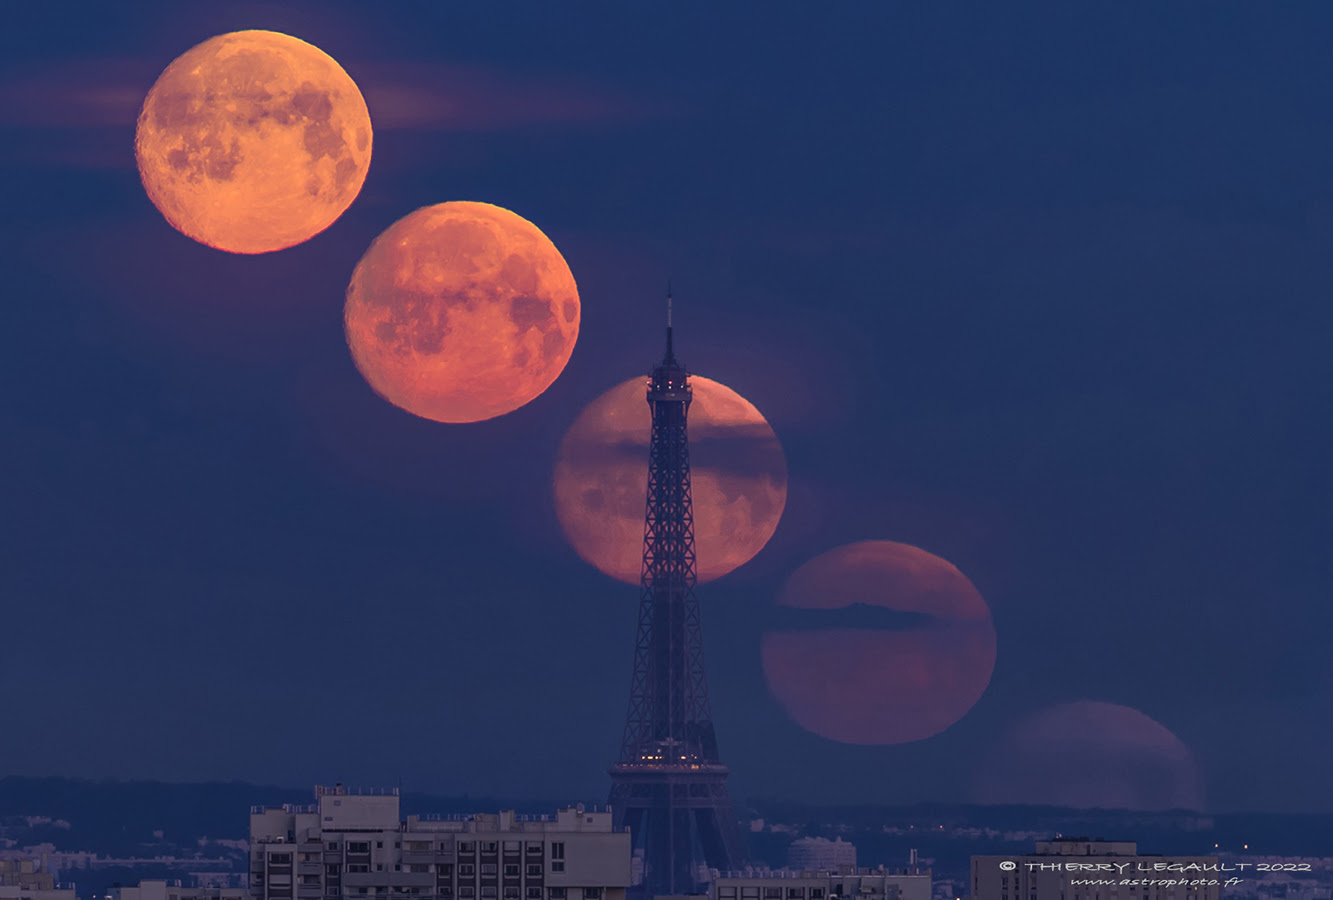 Mặt trăng phía sau tháp Eiffel vào ngày 15/4/2022. (Ảnh: Thierry Legault)